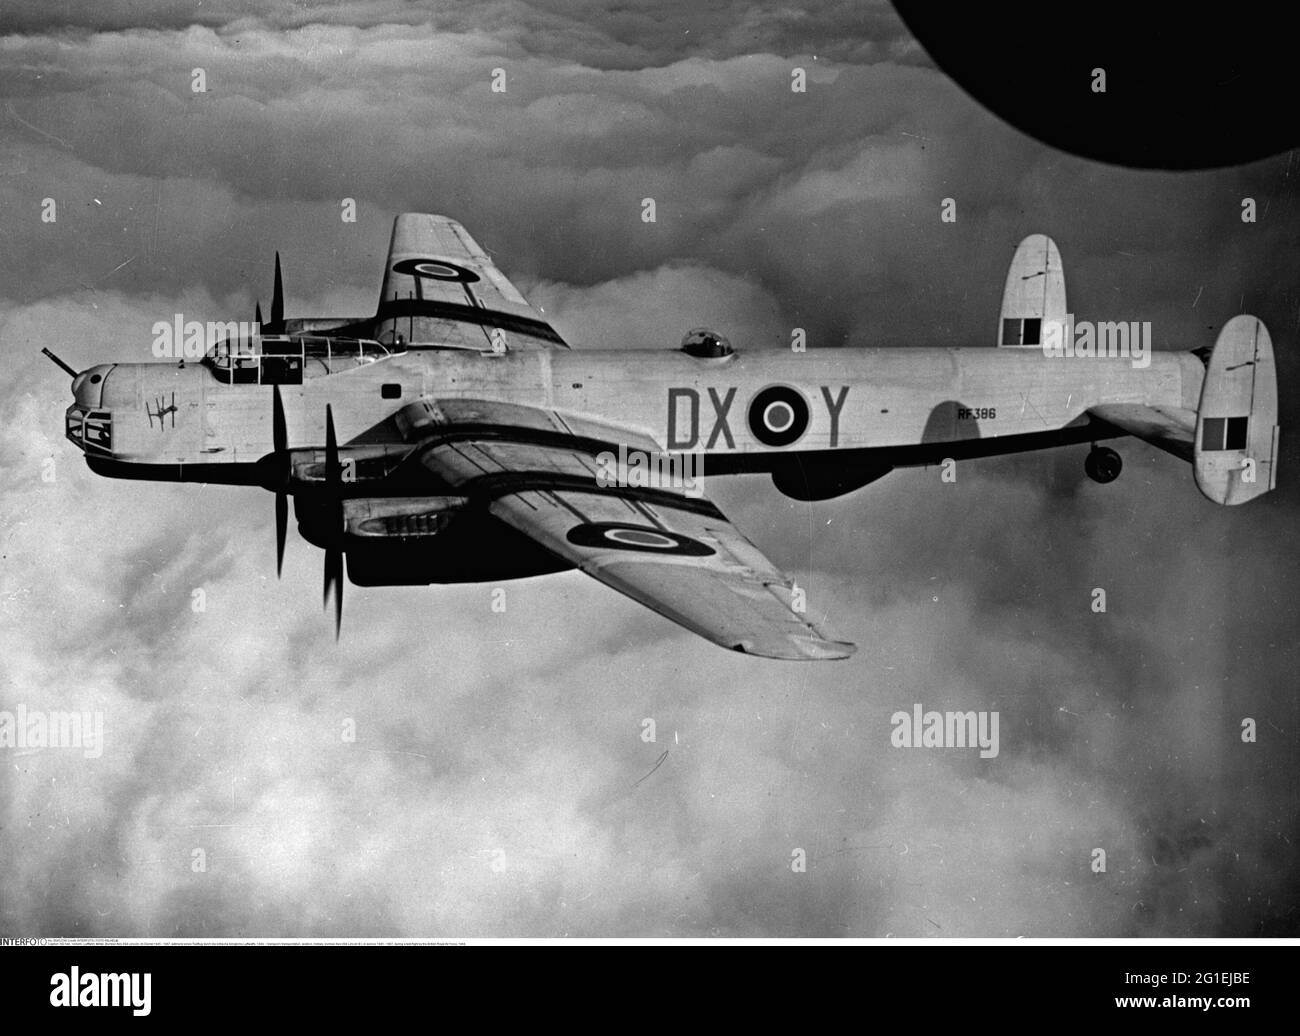 Trasporto / trasporto, aviazione, militare, bombardiere Avro 694 Lincoln B i, in servizio 1945 - 1967, SOLO PER USO EDITORIALE Foto Stock